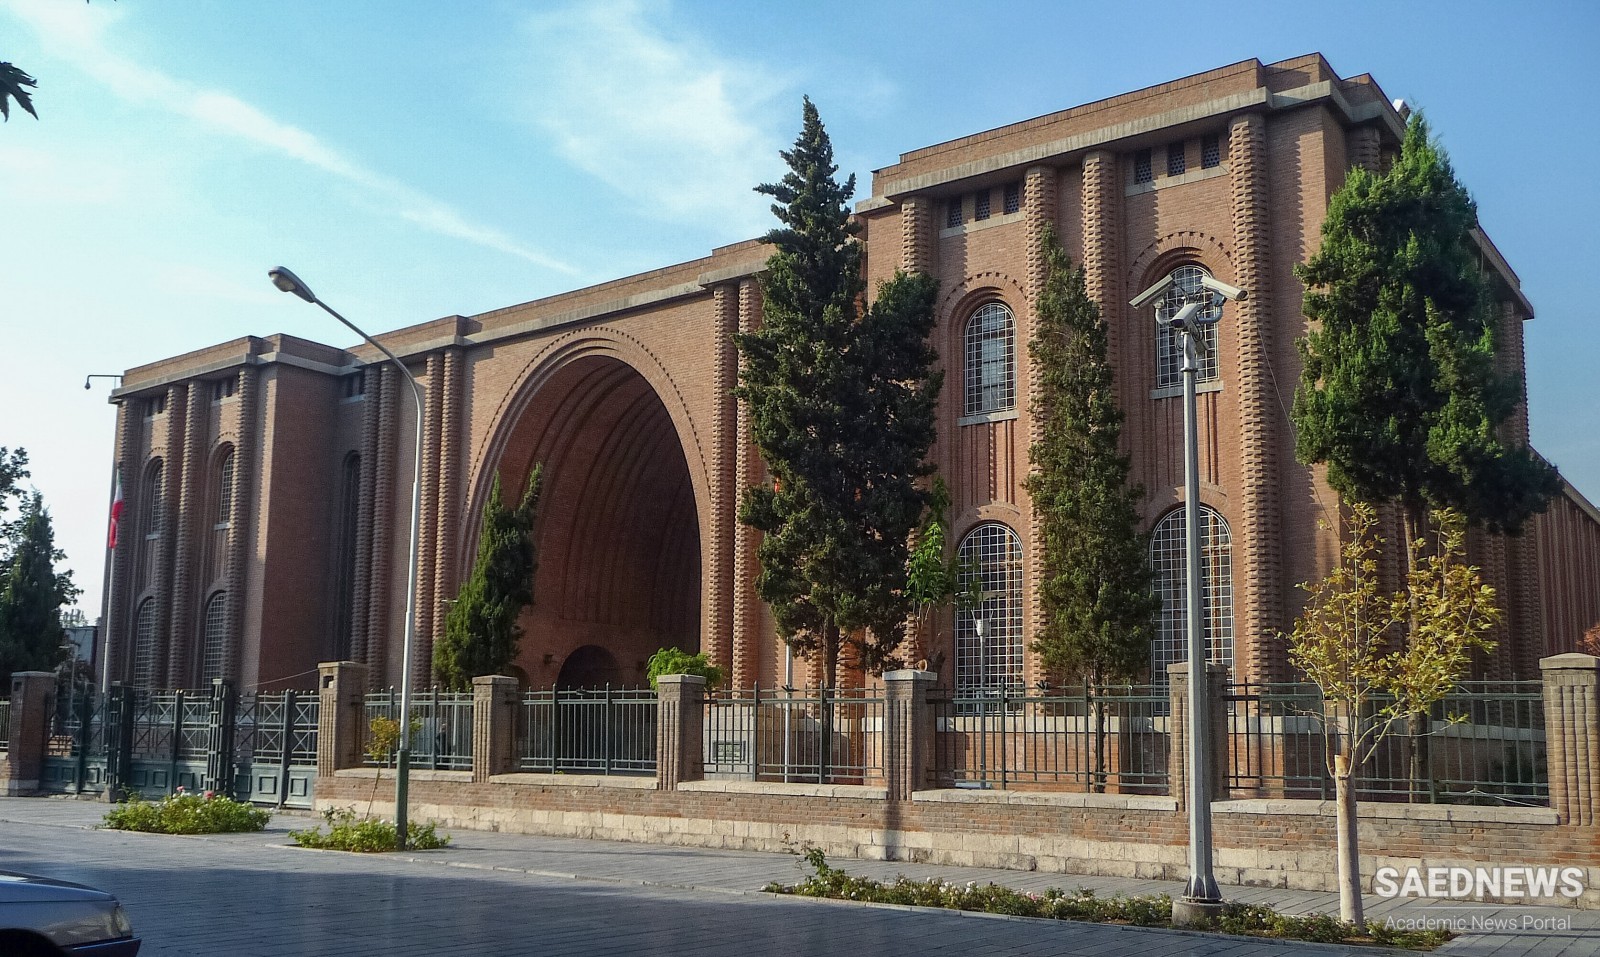 ईरान राष्ट्रीय संग्रहालय: प्राचीन फ़ारसी सभ्यता की महानता का साक्षी